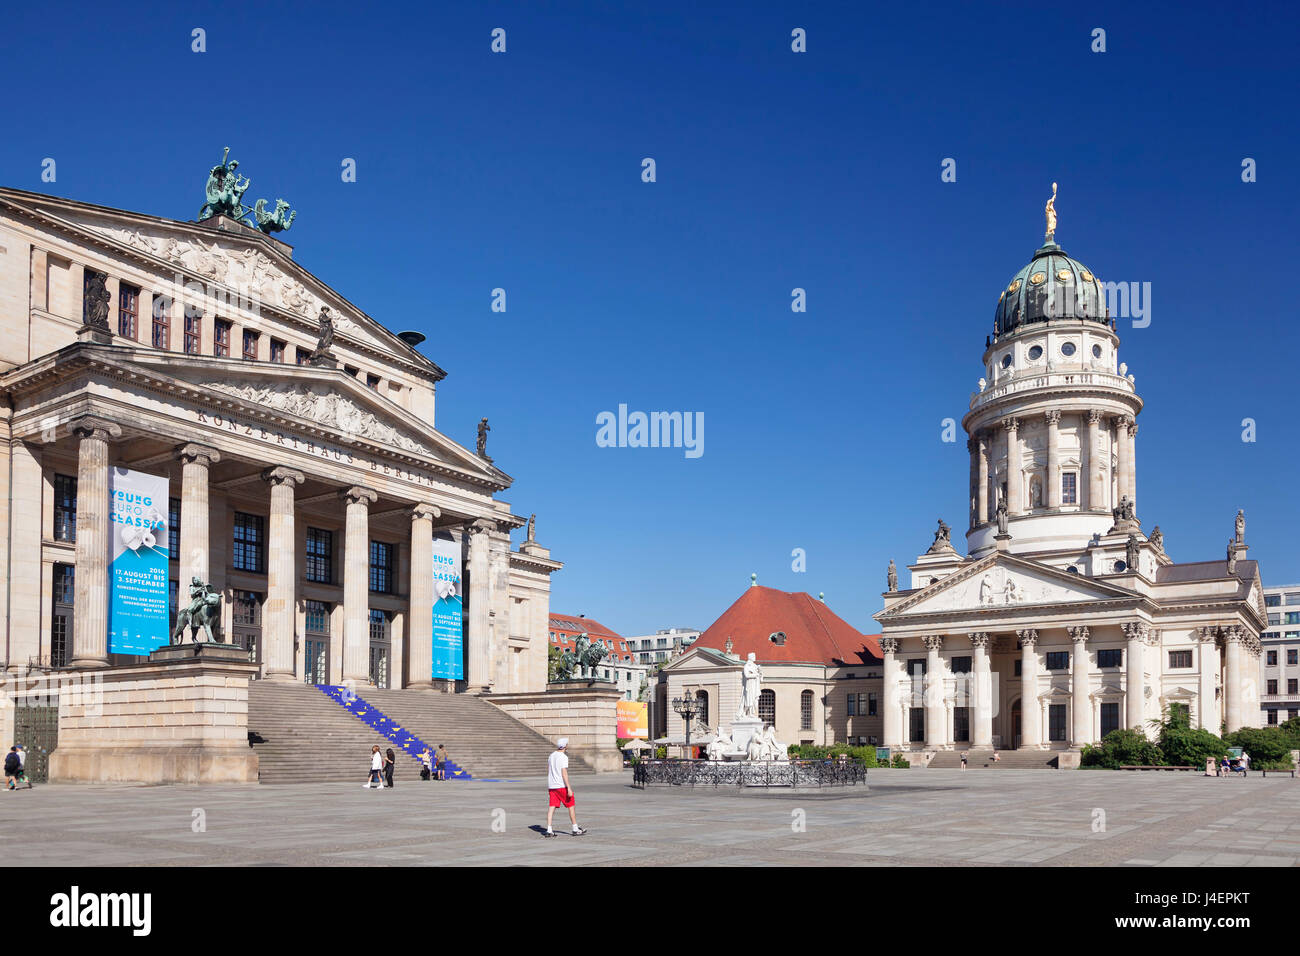 Franzoesischer Dom (French Cathedral), Schiller memorial, Konzerthaus (concert hall), Gendarmenmarkt, Mitte, Berlin, Germany Stock Photo